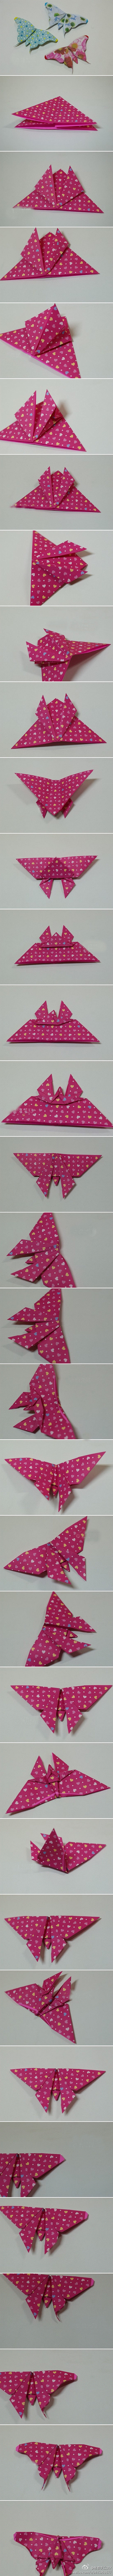 漂亮的蝴蝶折纸，有点长，慢慢看完哟~喜欢...